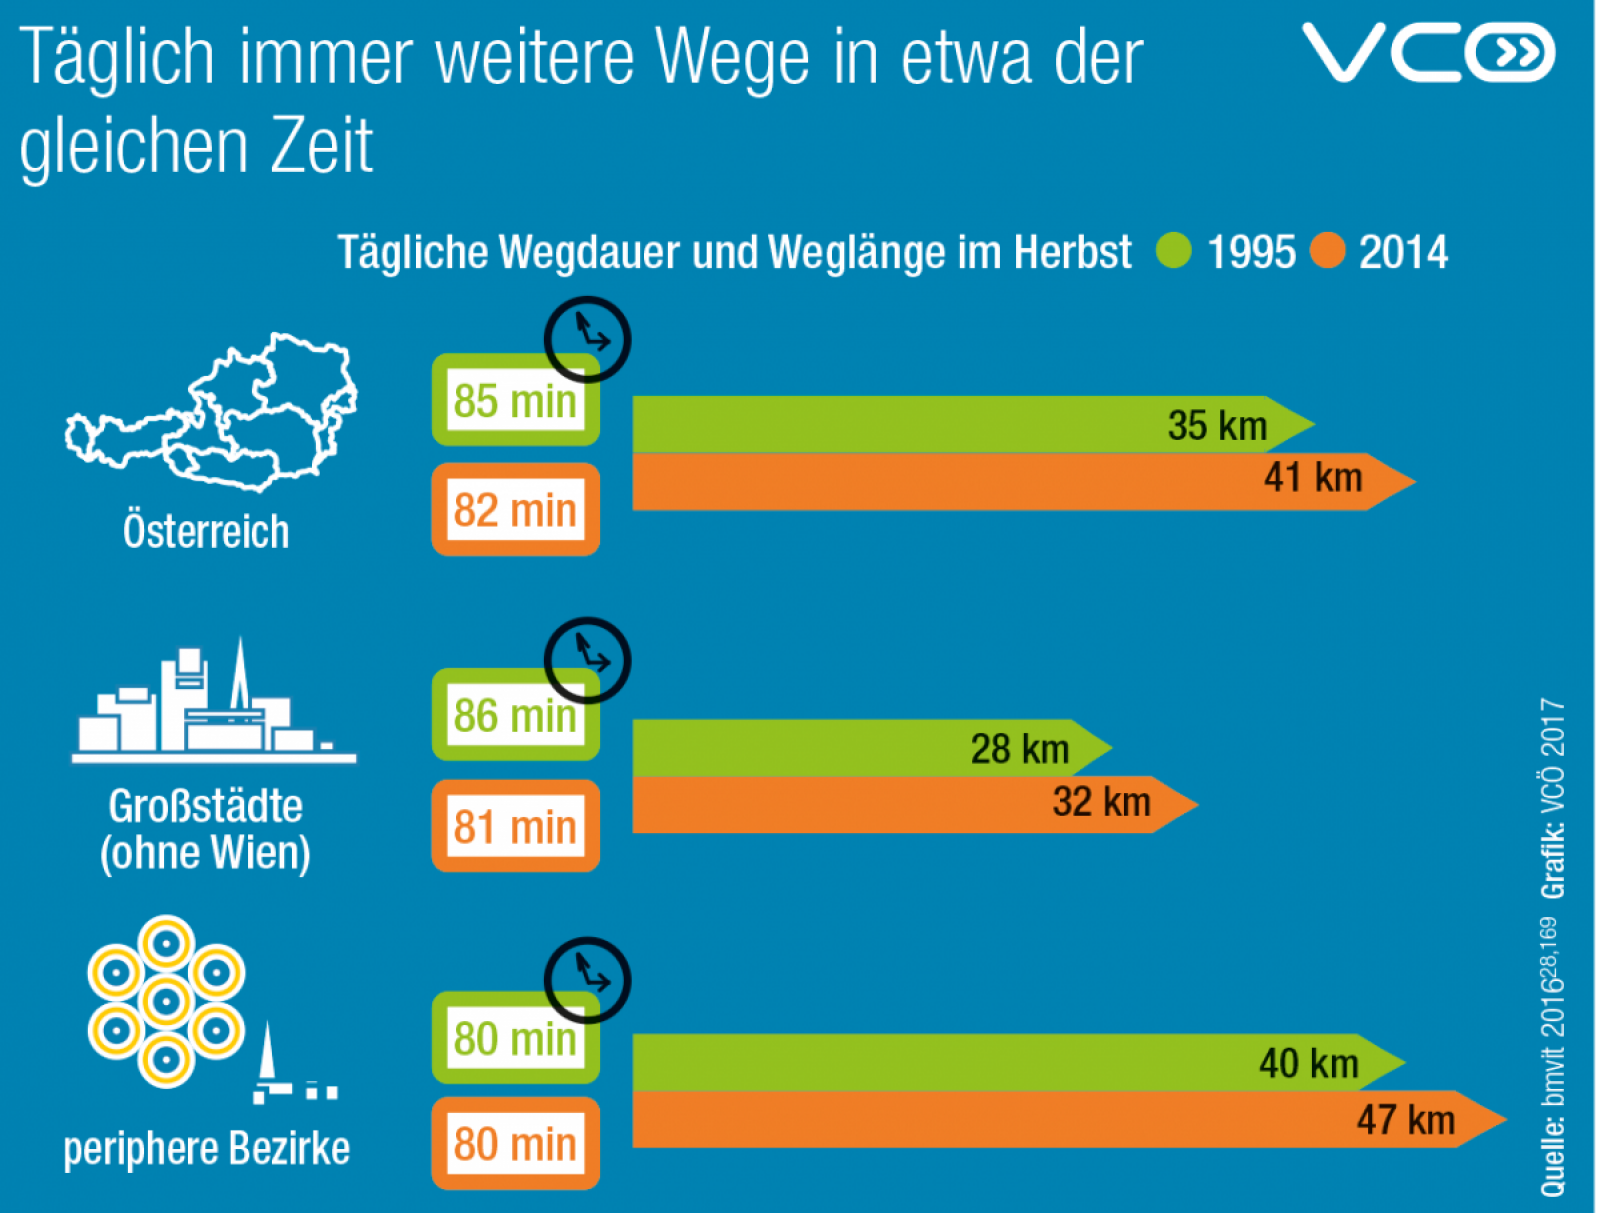 Grafik zeigt wie sich die täglich zurückgelegte Weglänge von 1995 bis 2014 in Österreich um 16% erhöht hat. Der Zeitaufwand für die Wege blieben etwa gleich.